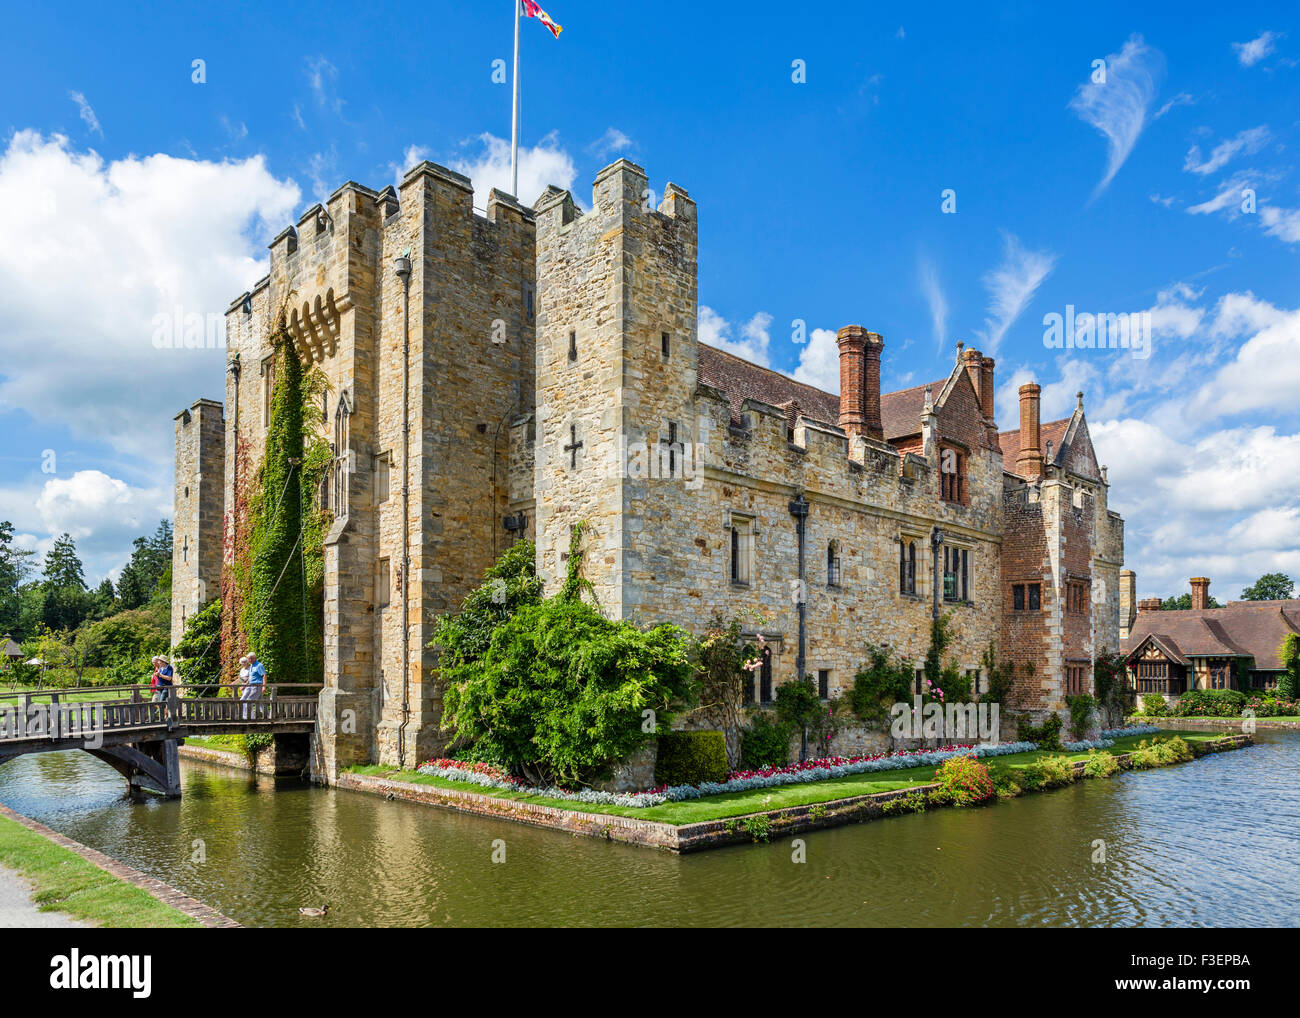 El castillo de Hever, la casa de Anne Boleyn, Hever, Kent, Inglaterra, Reino Unido. Foto de stock